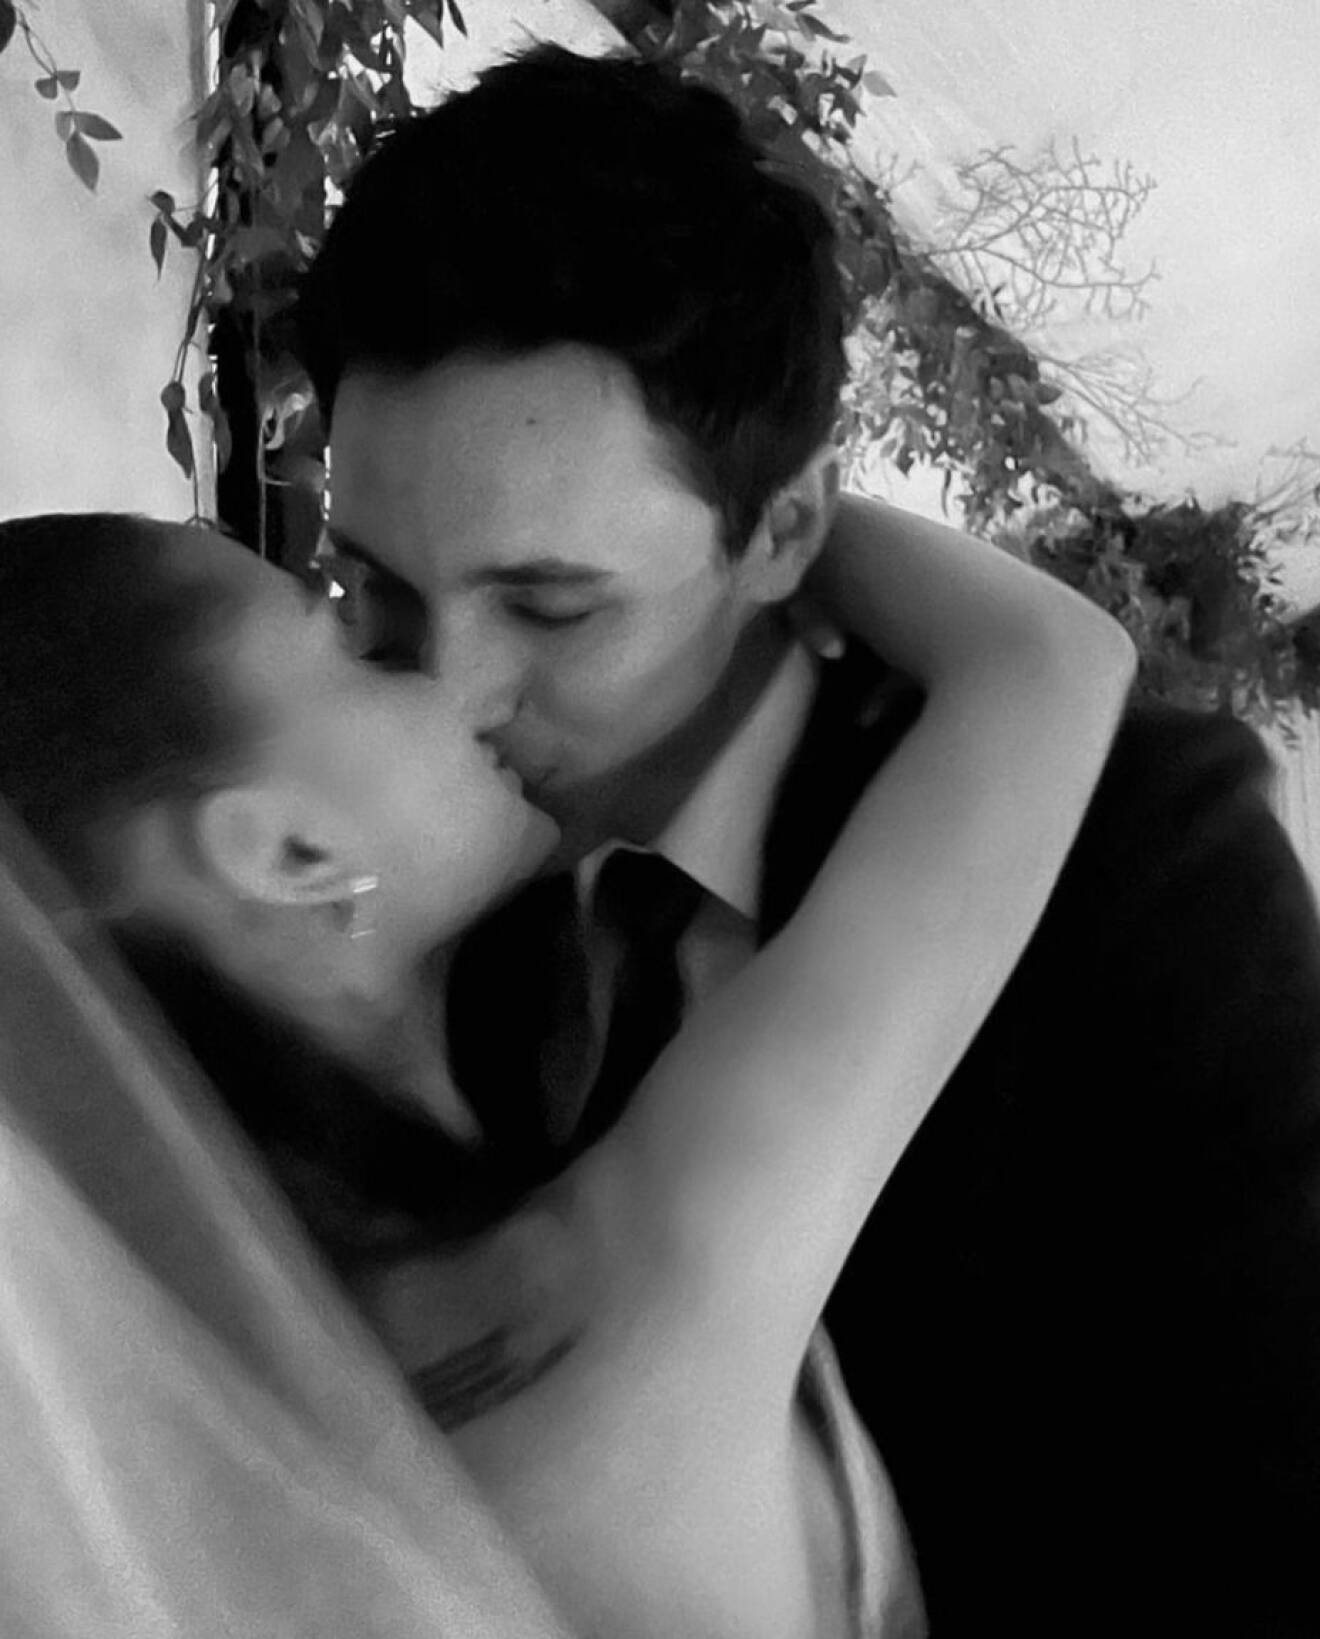 ariana och dalton kysser varandra på bröllopsdagen